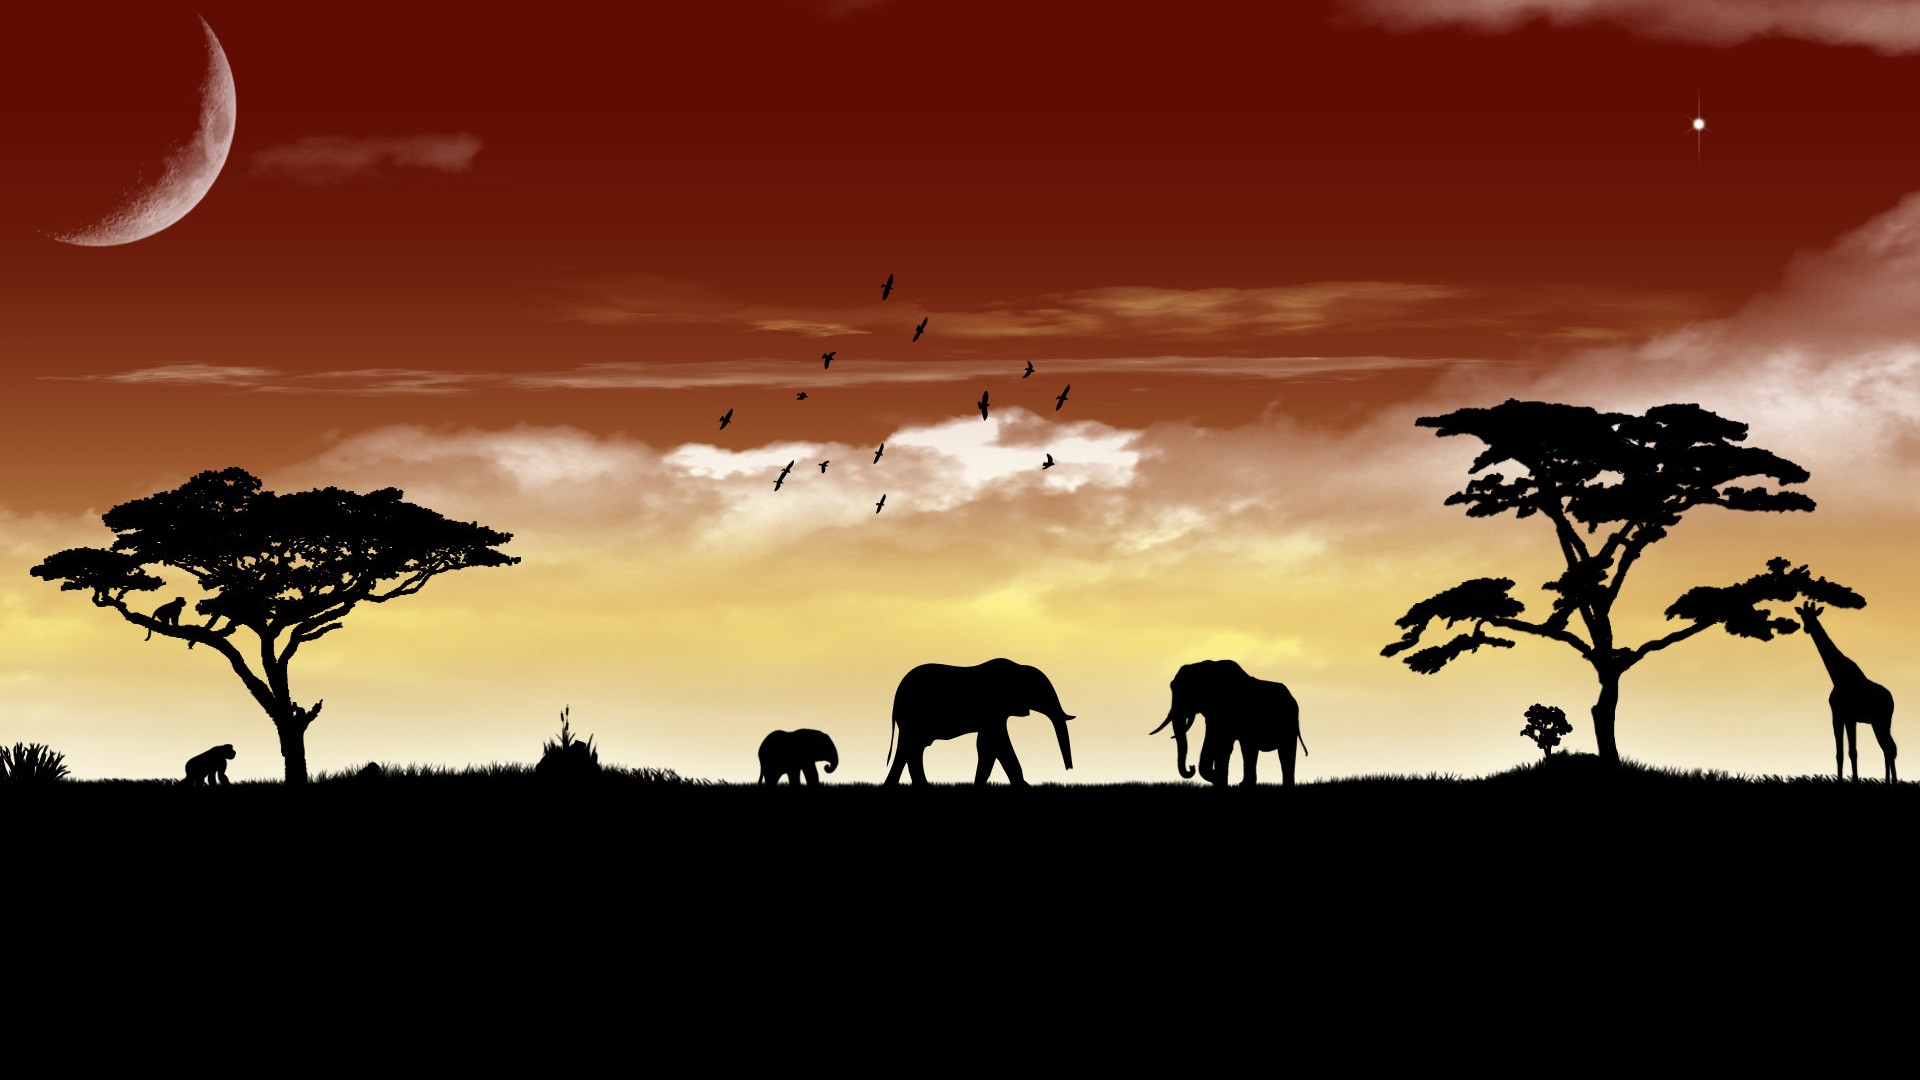 Descarga gratuita de fondo de pantalla para móvil de Vector, Silueta, Artístico, Jirafa, Elefante, África, Atardecer.